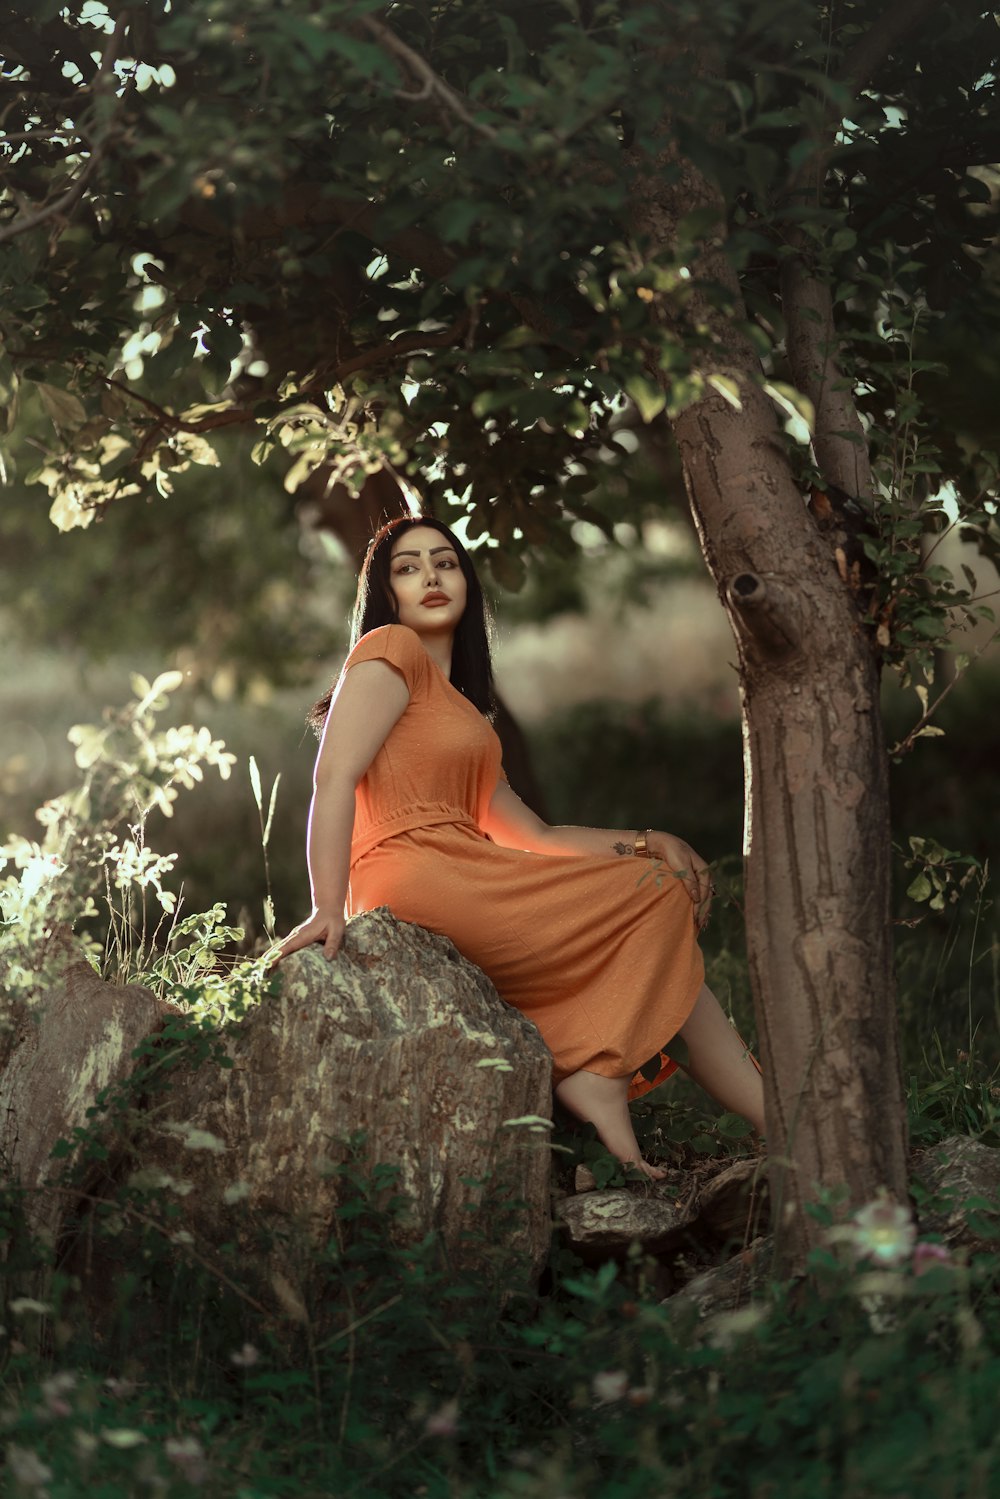 a woman in an orange dress sitting on a rock